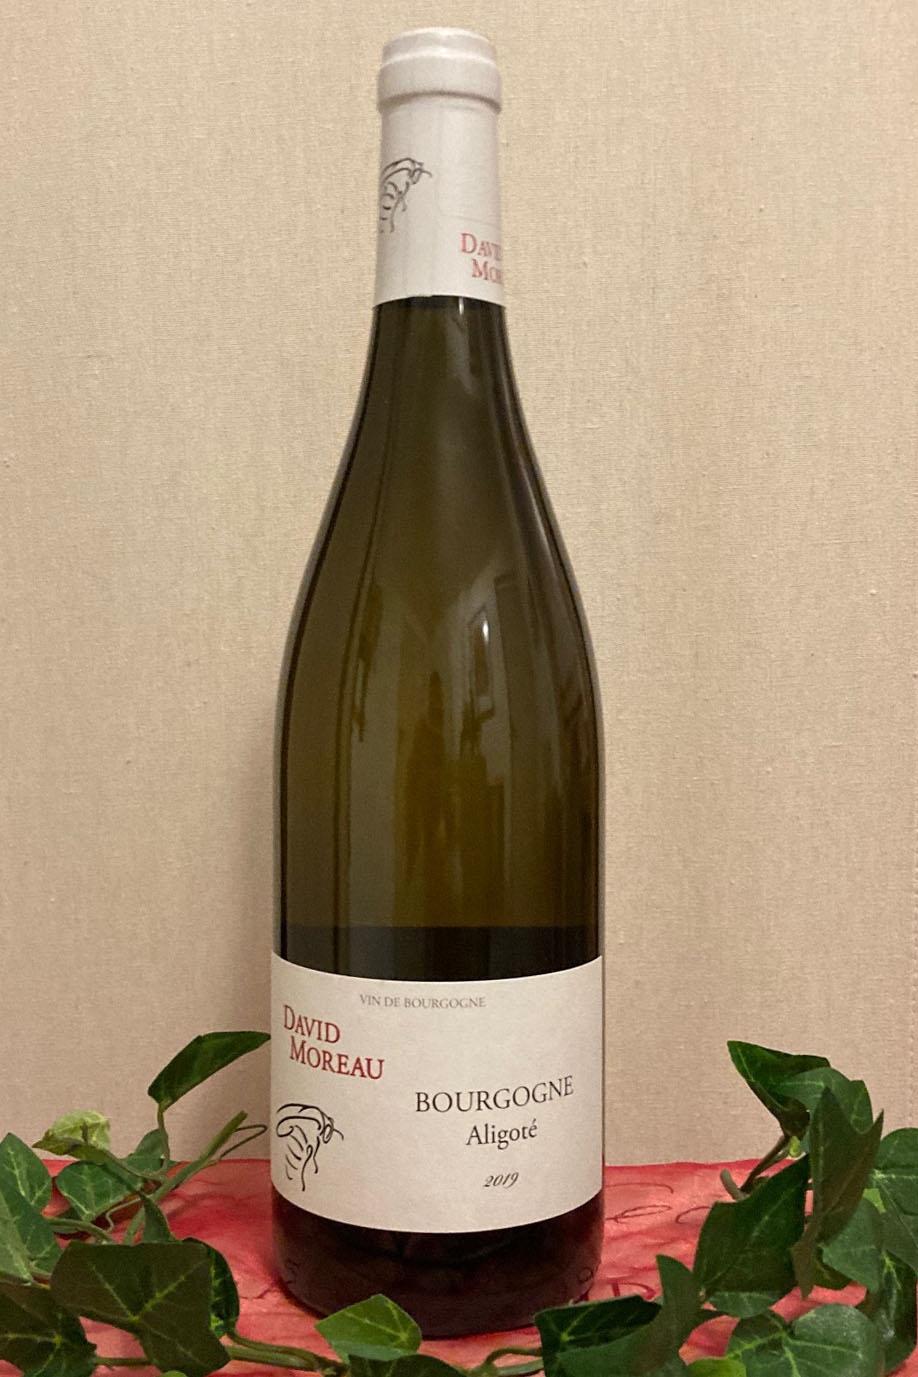 2019 Bourgogne Aligoté blanc, Domaine David Moreau, Santenay, Burgund